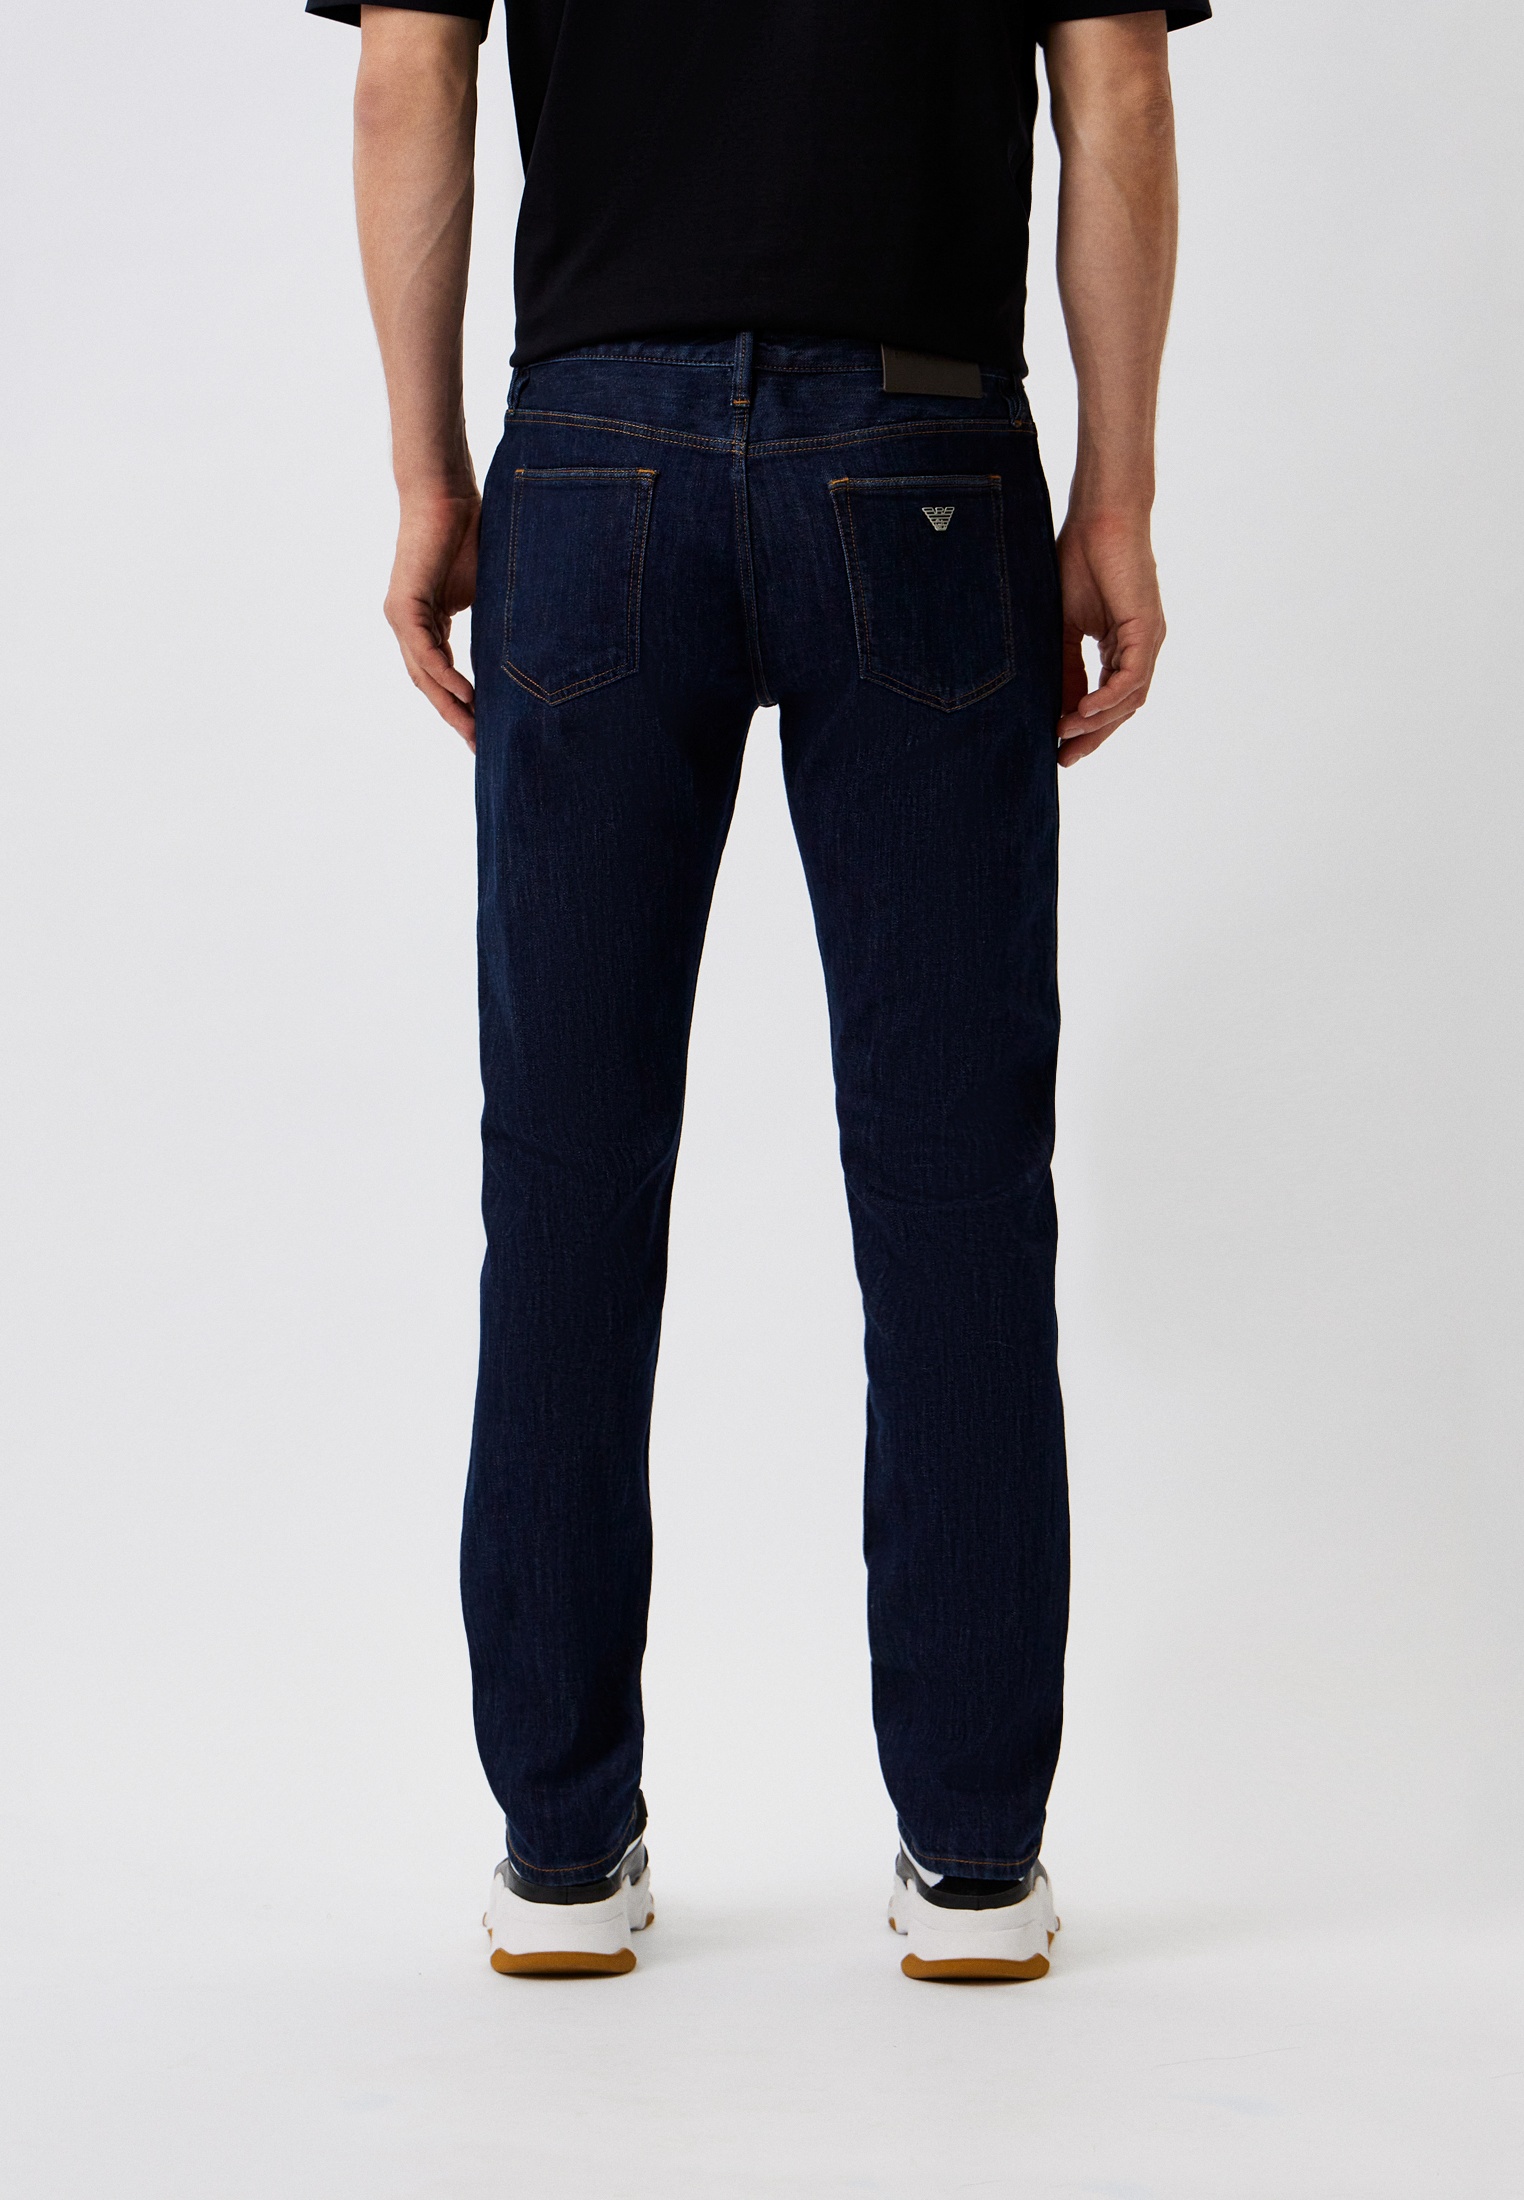 Мужские зауженные джинсы Emporio Armani (Эмпорио Армани) 6R1J75 1DQSZ: изображение 3